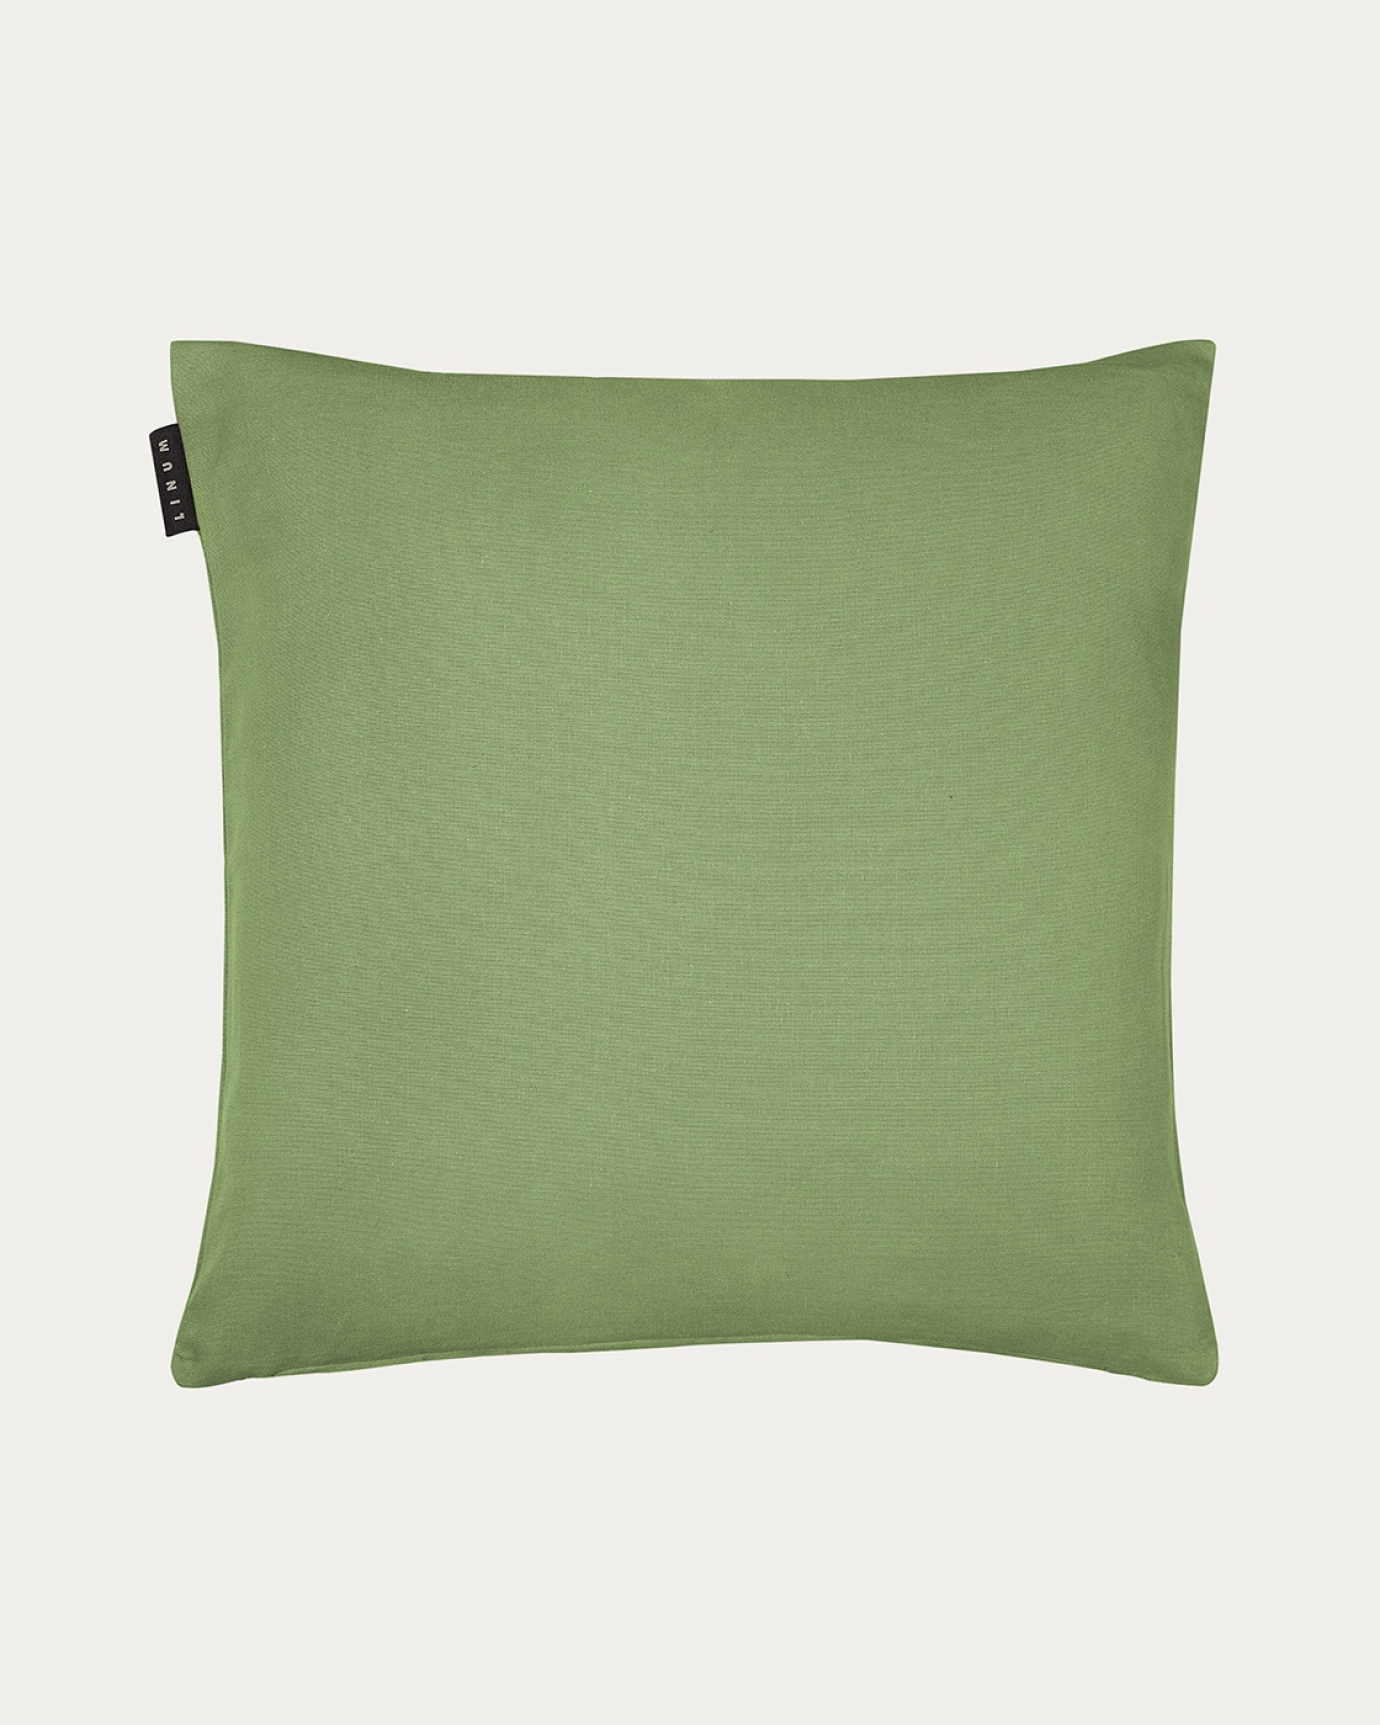 Produktbild moosgrün ANNABELL Kissenhülle aus weicher Baumwolle von LINUM DESIGN. Größe 50x50 cm.